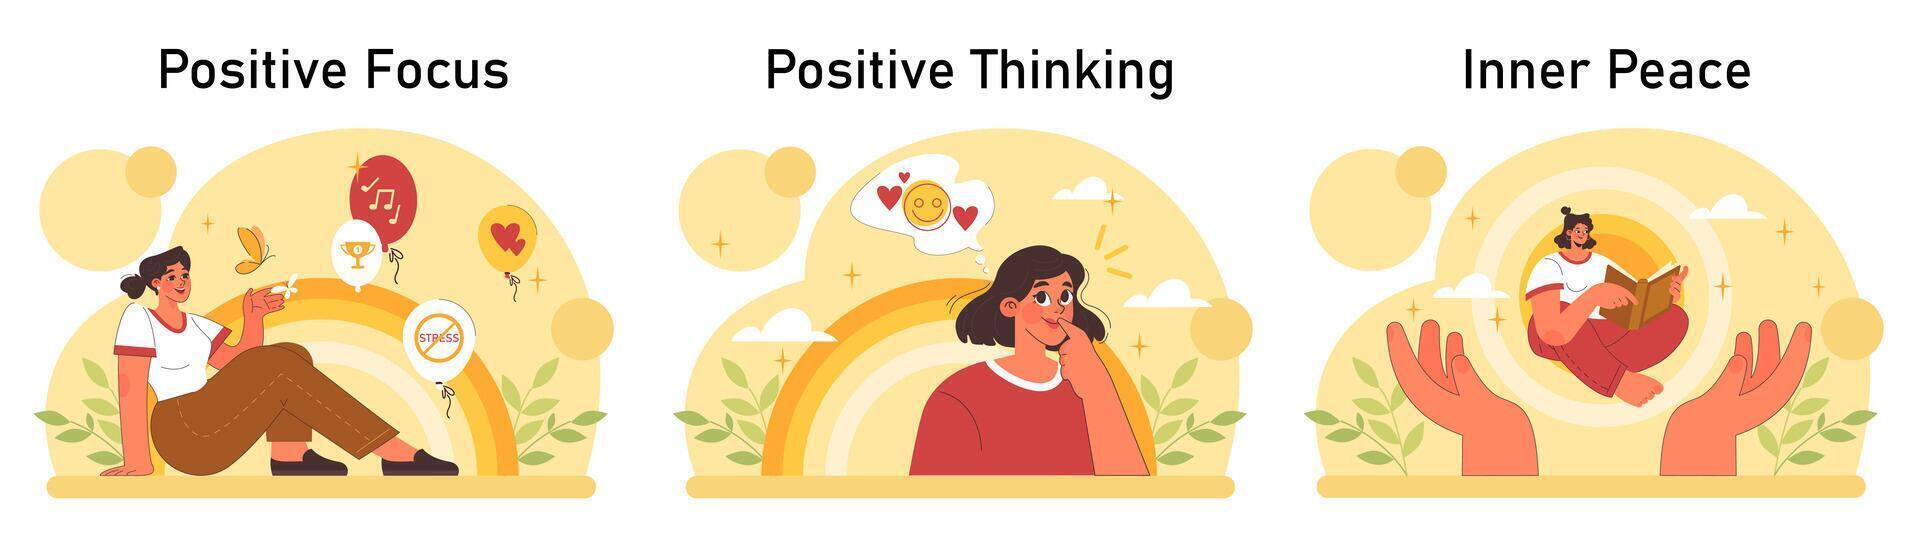 positivo psicología colocar. positivo pensando y actitud. optimista mentalidad vector